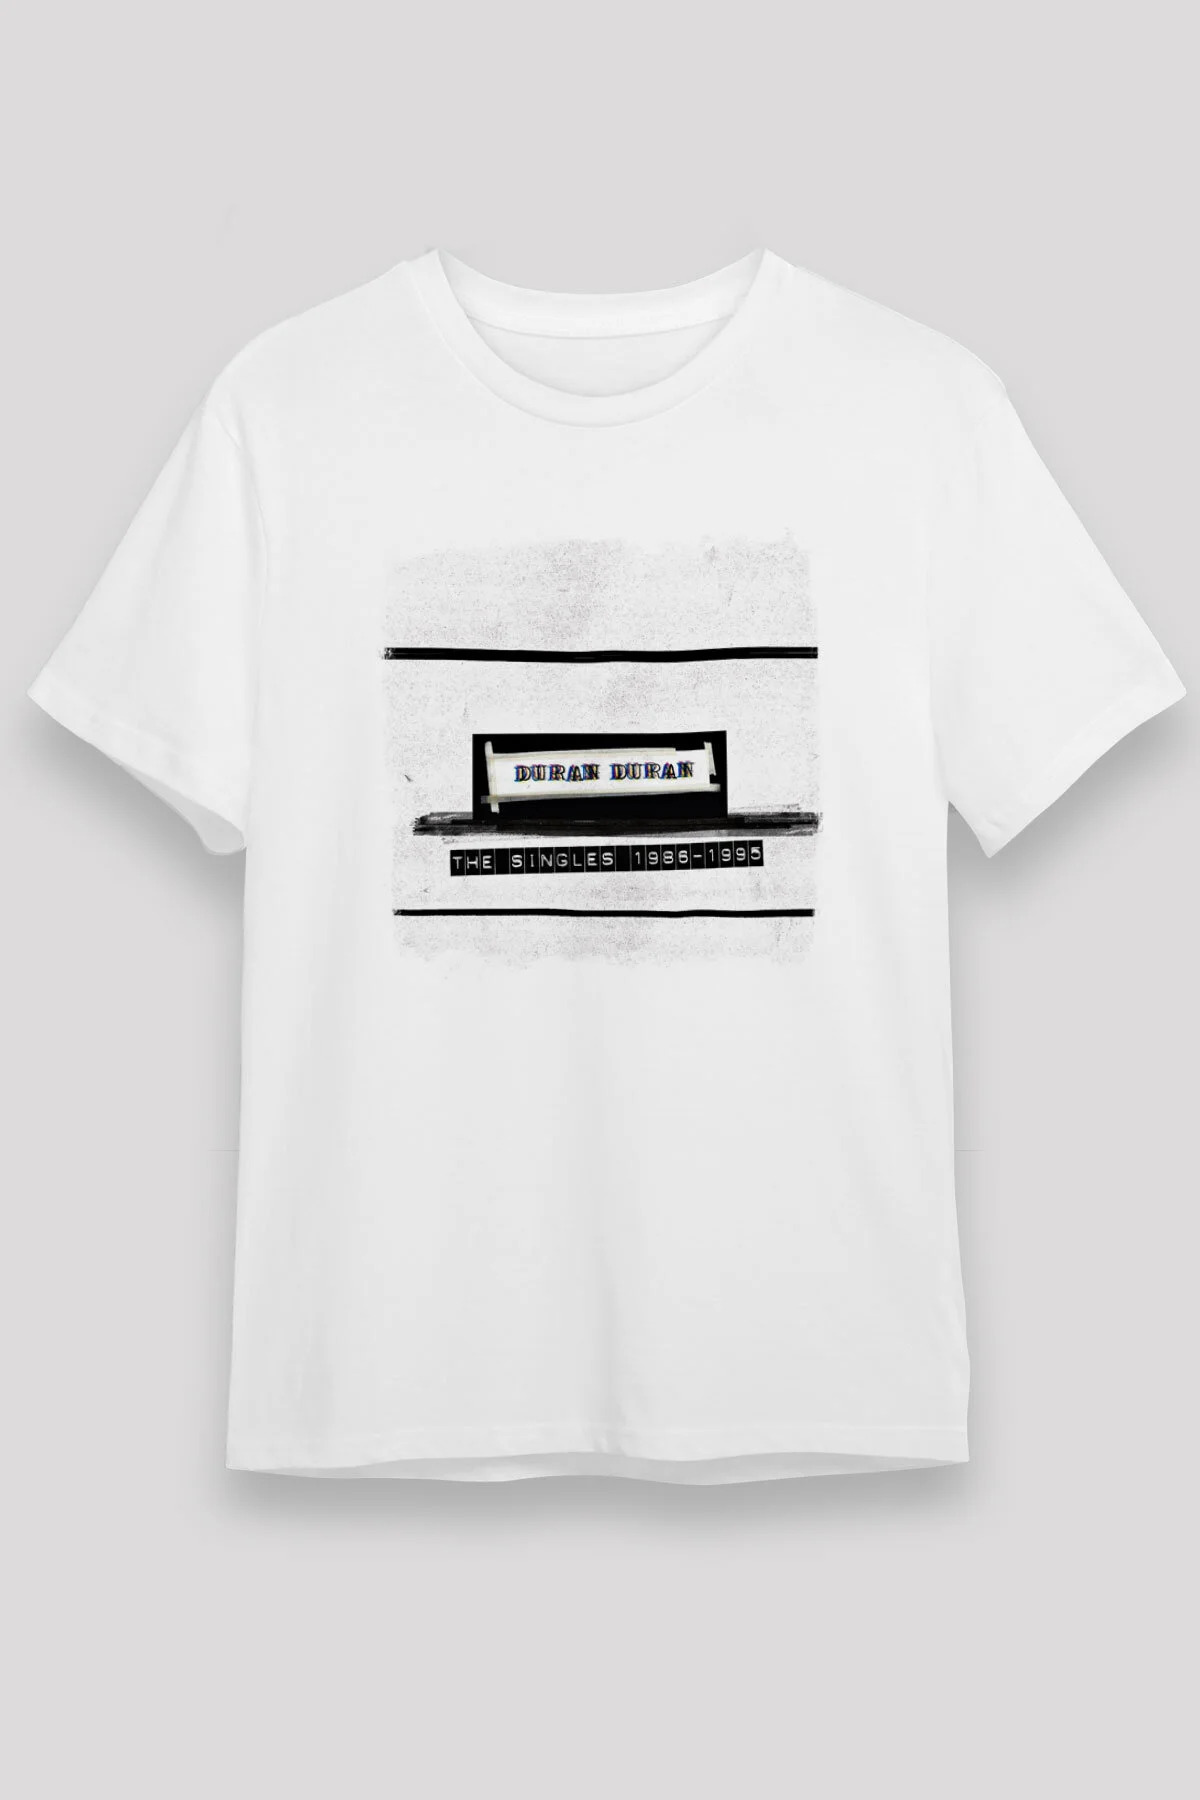 Duran Duran  T shirt , Music Band ,Unisex Tshirt  13/